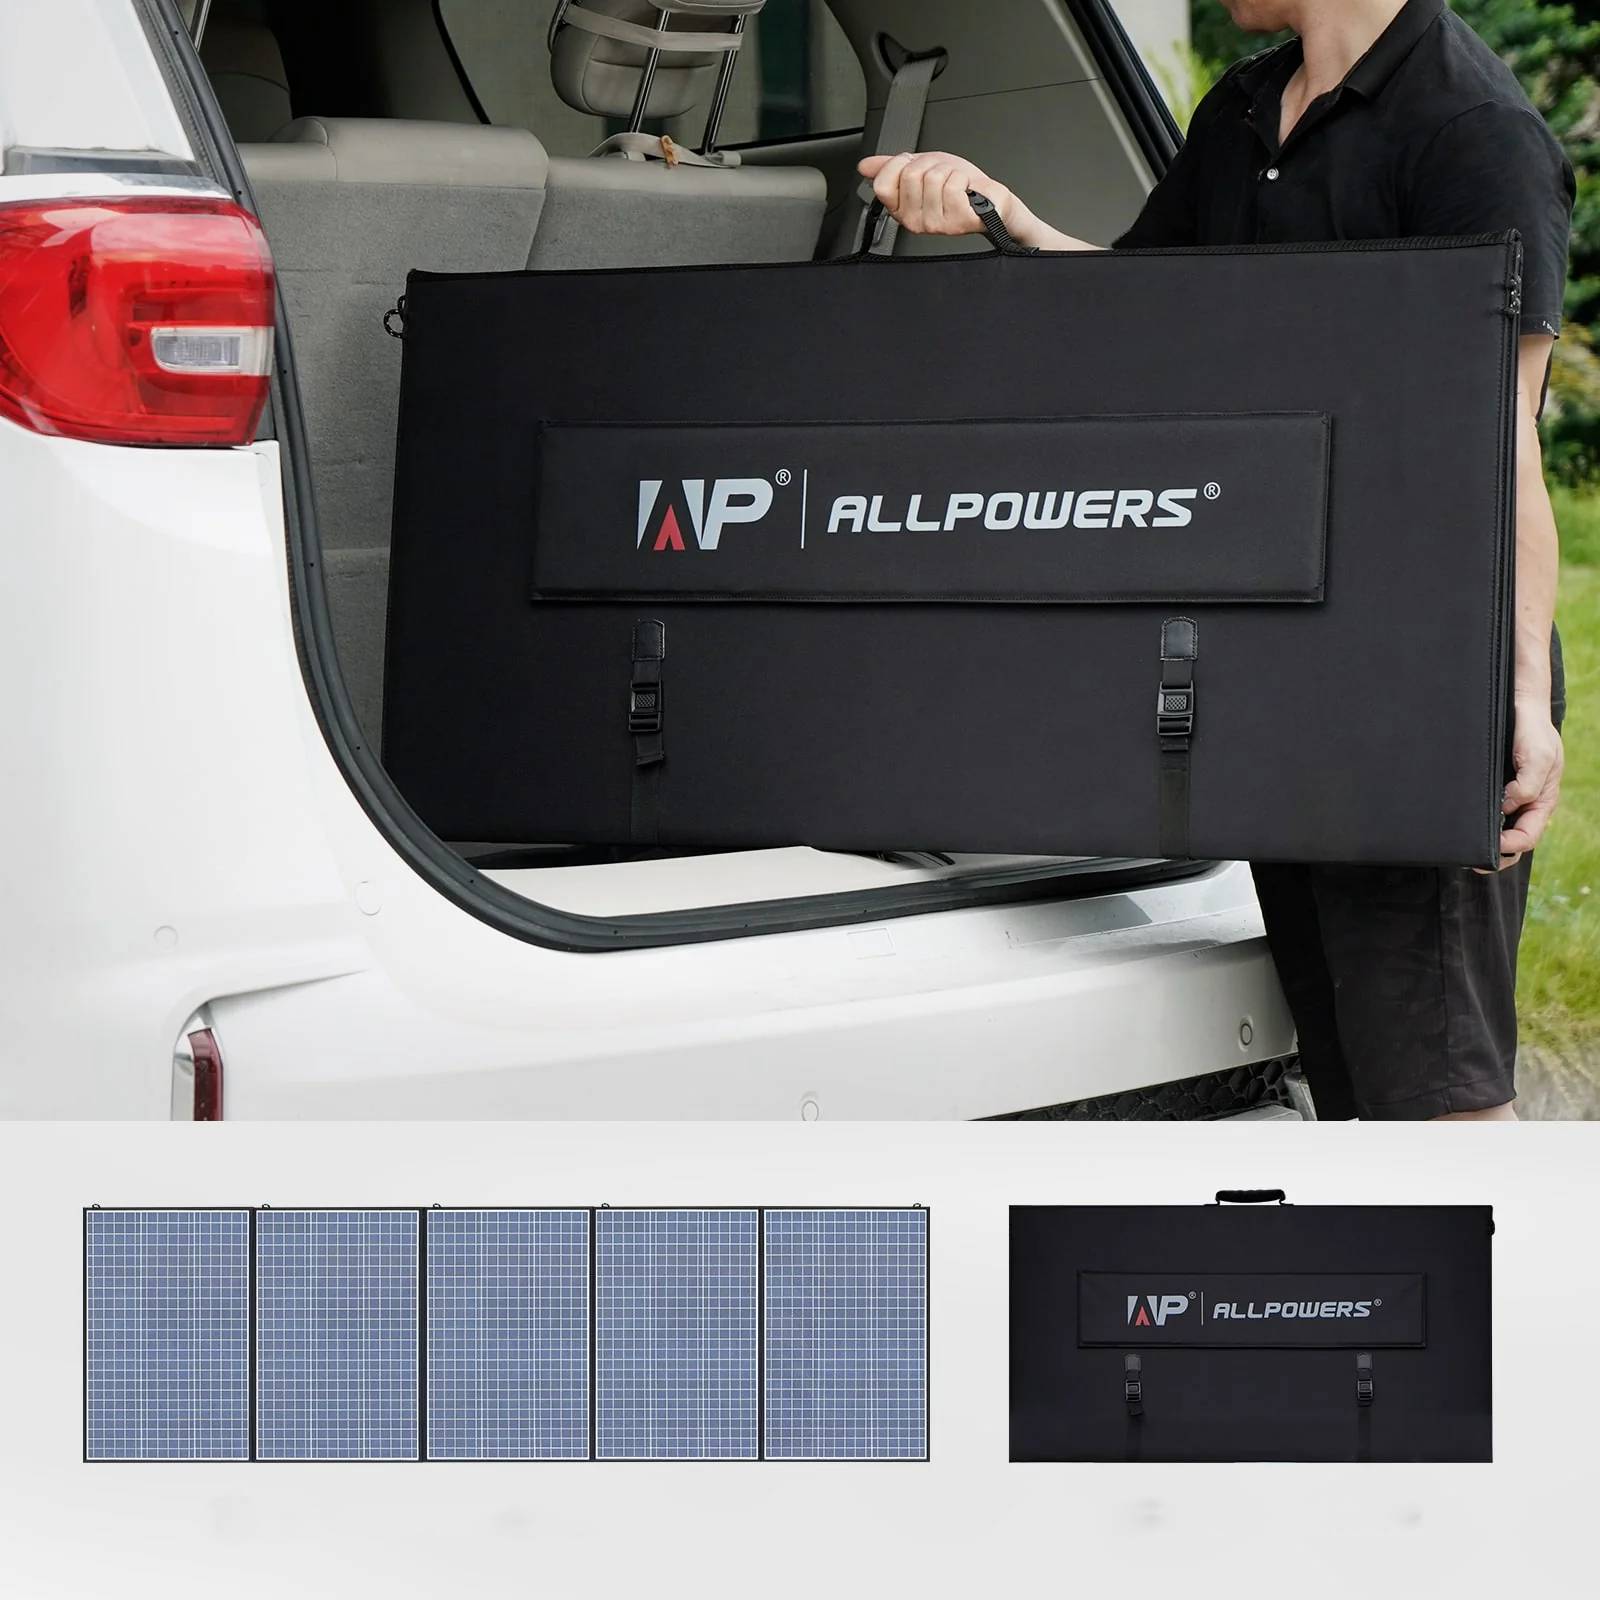 Générateur solaire ALLPOWERS S2000 pro Centrale électrique portable + Panneau solaire SP033 2pcs × 200W